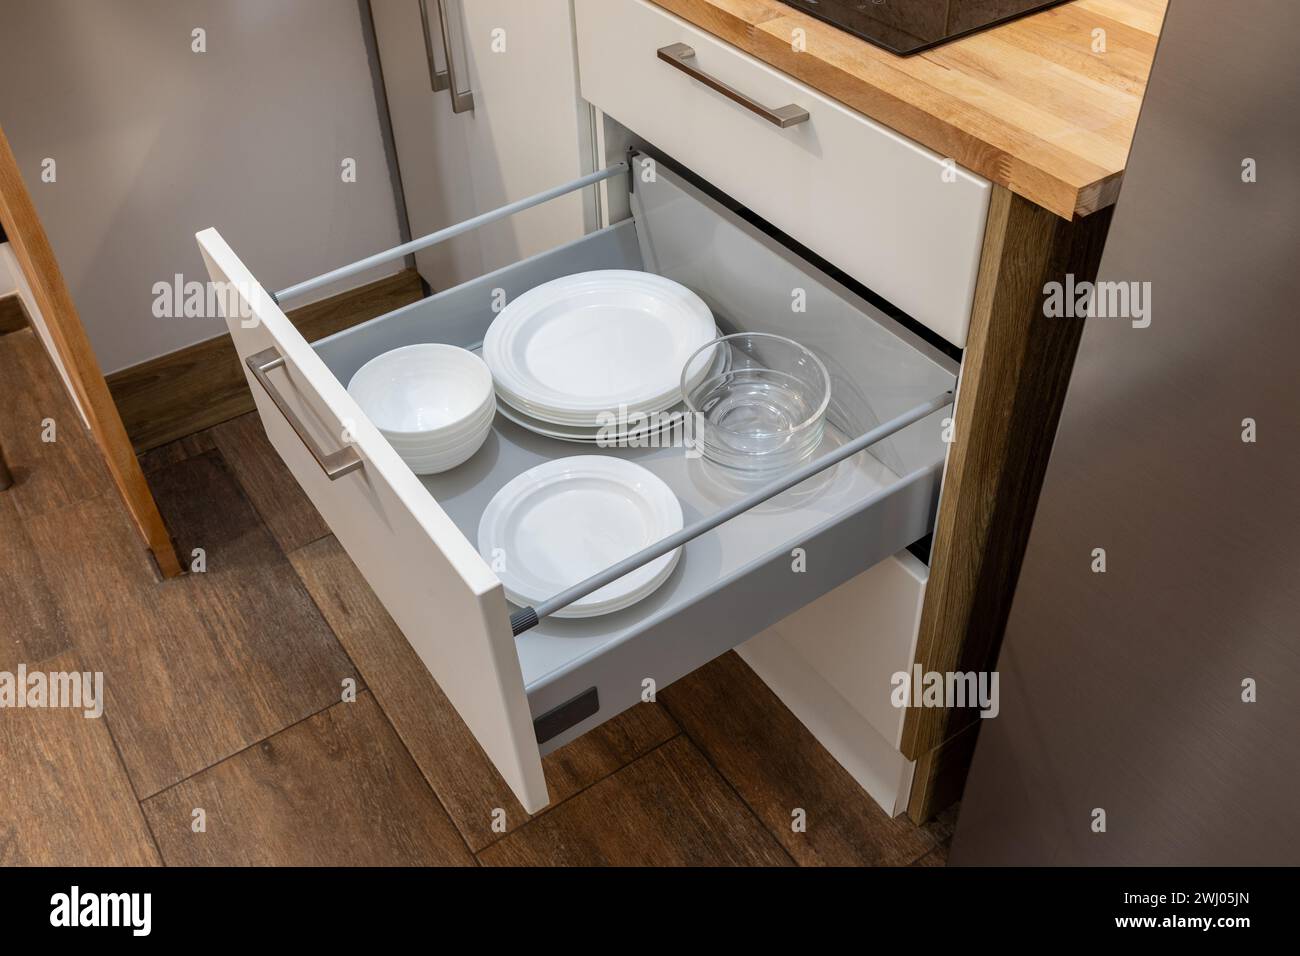 Holzküche Schubladenorganizer, Utensilienhalter mit Geschirr, Teller, Kappen, Möbeldetails. Stockfoto